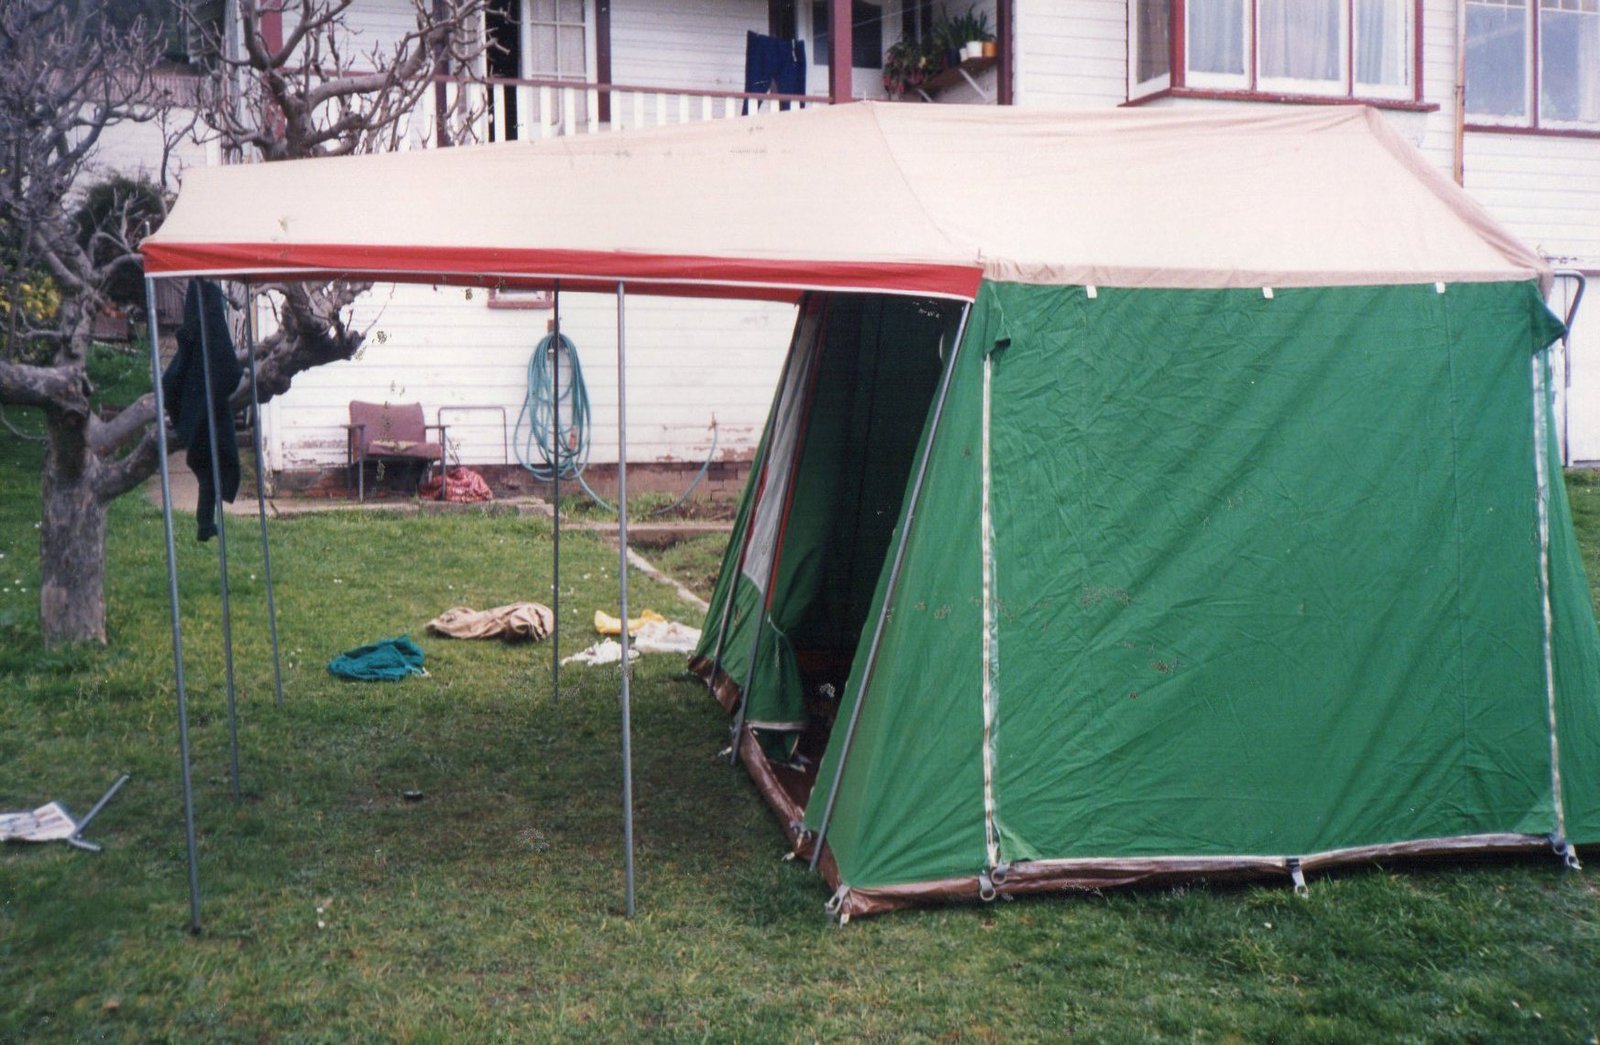 35 Tent test in Granville st backyard.jpg